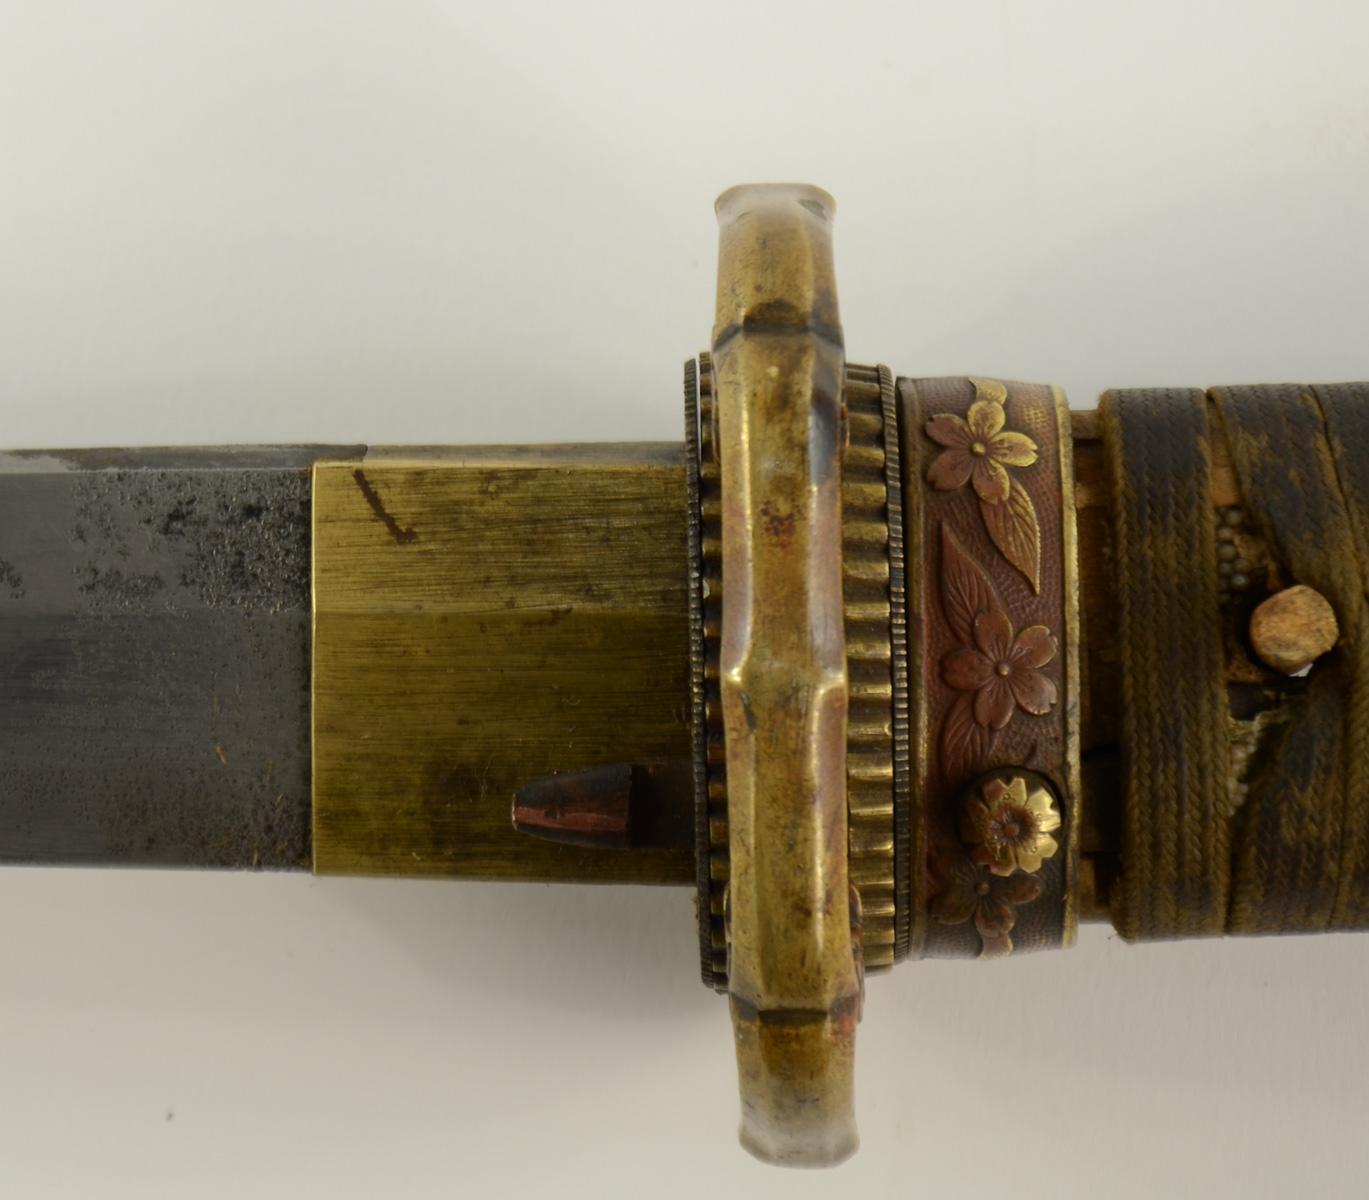 19th C. Japanese Katana Sword